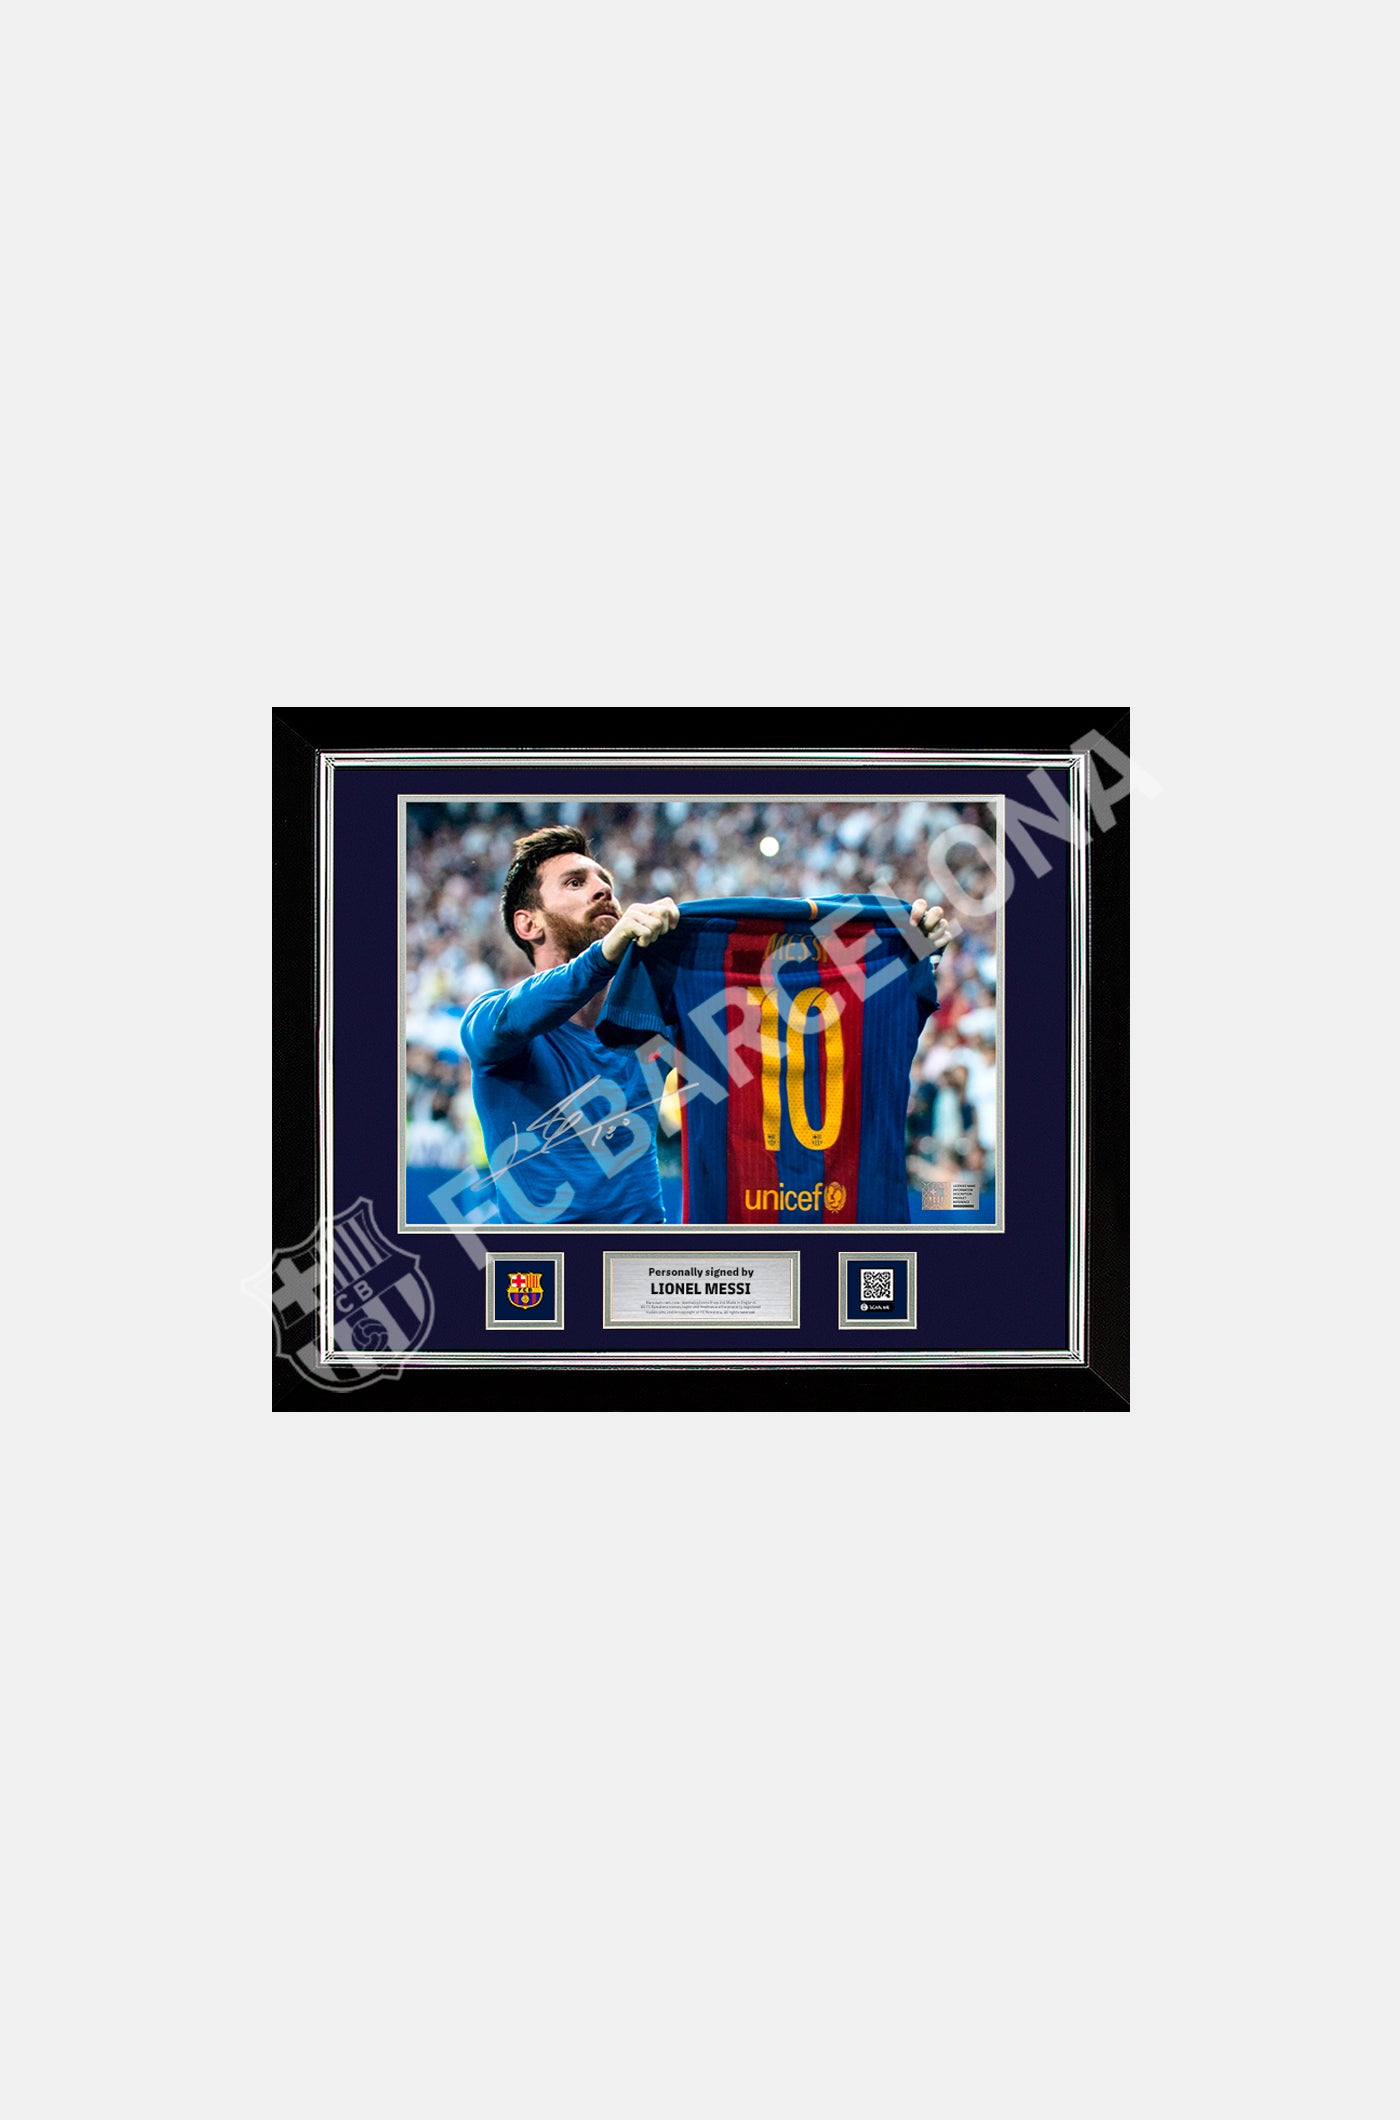 Offizielles FC Barcelona-Foto der legendären klassischen Feier, signiert und gerahmt von Lionel Messi